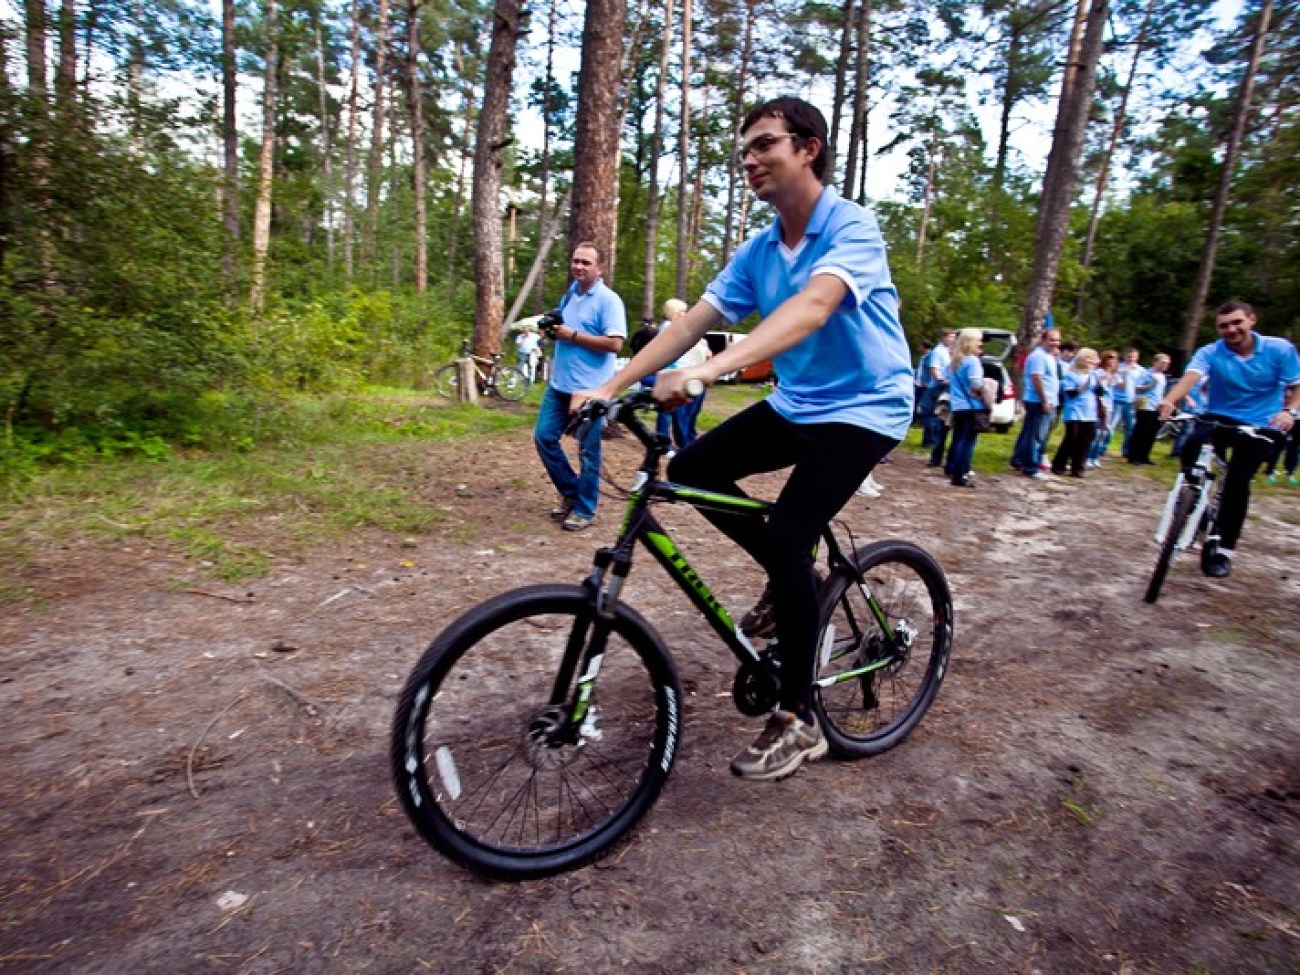 В Киеве открыли велосипедные маршруты &#171;Маршруты здоровья&#187;, 8 сентября 2012г.